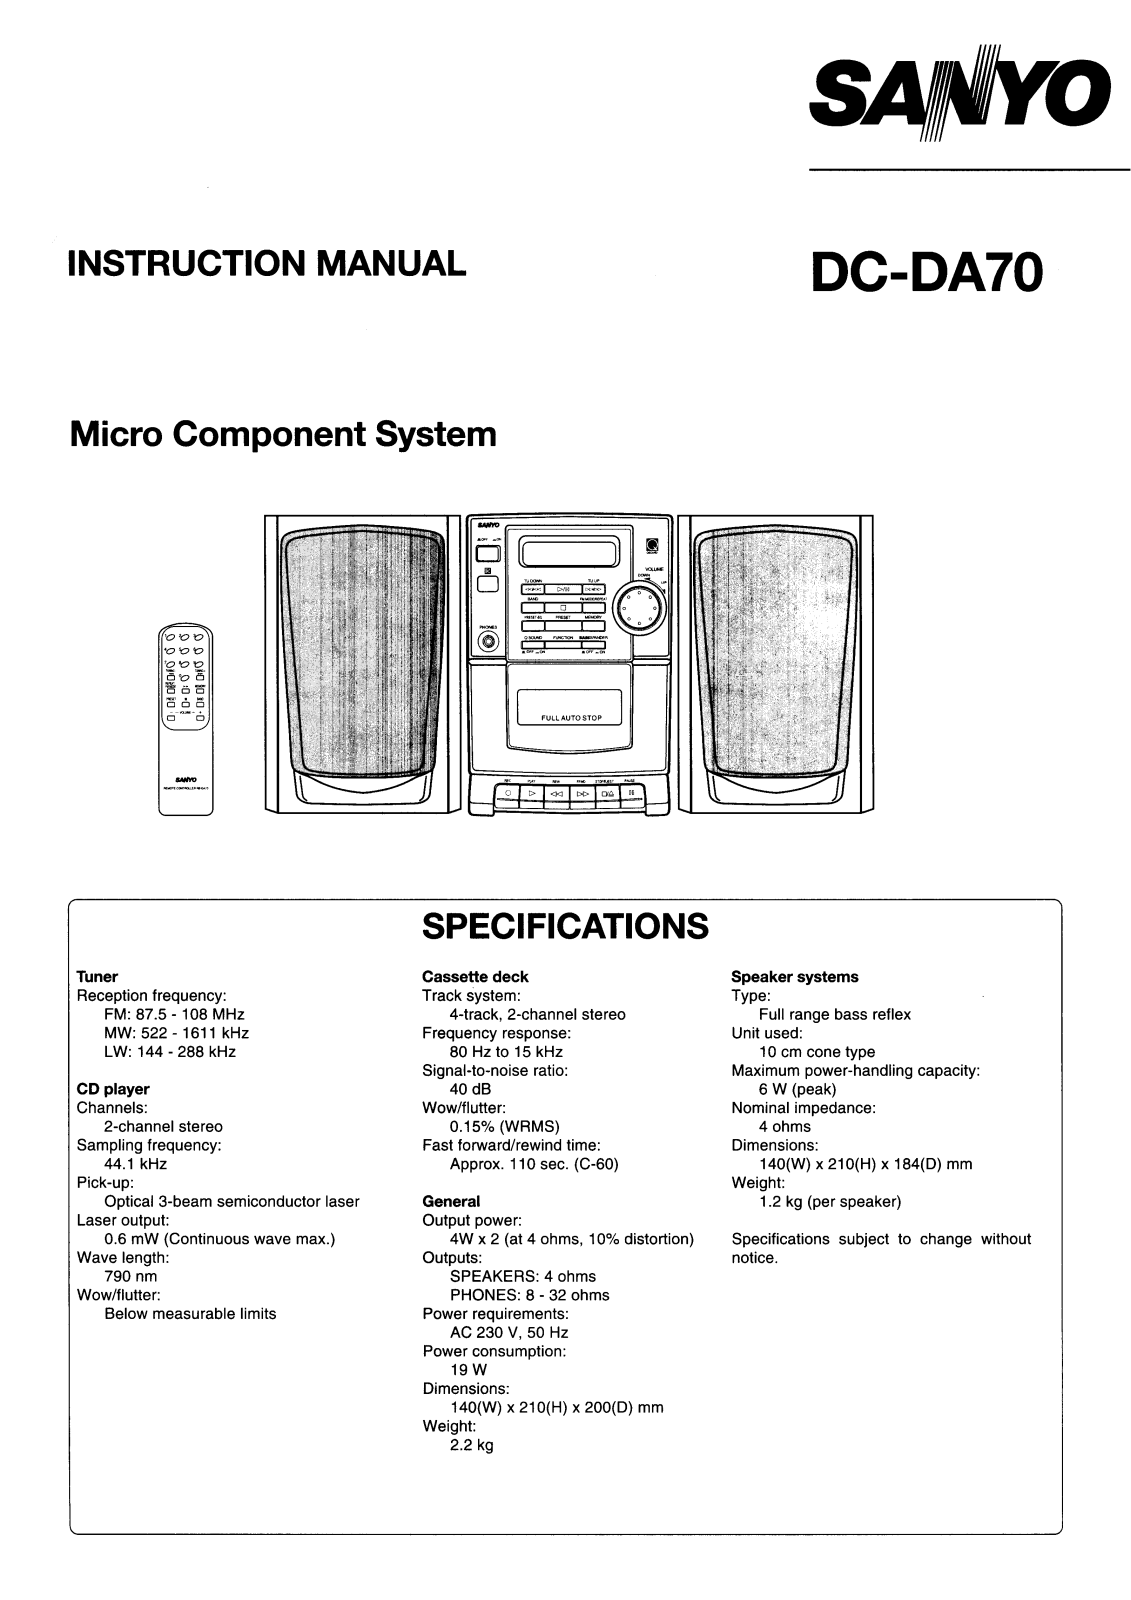 Sanyo DC-DA70 Instruction Manual